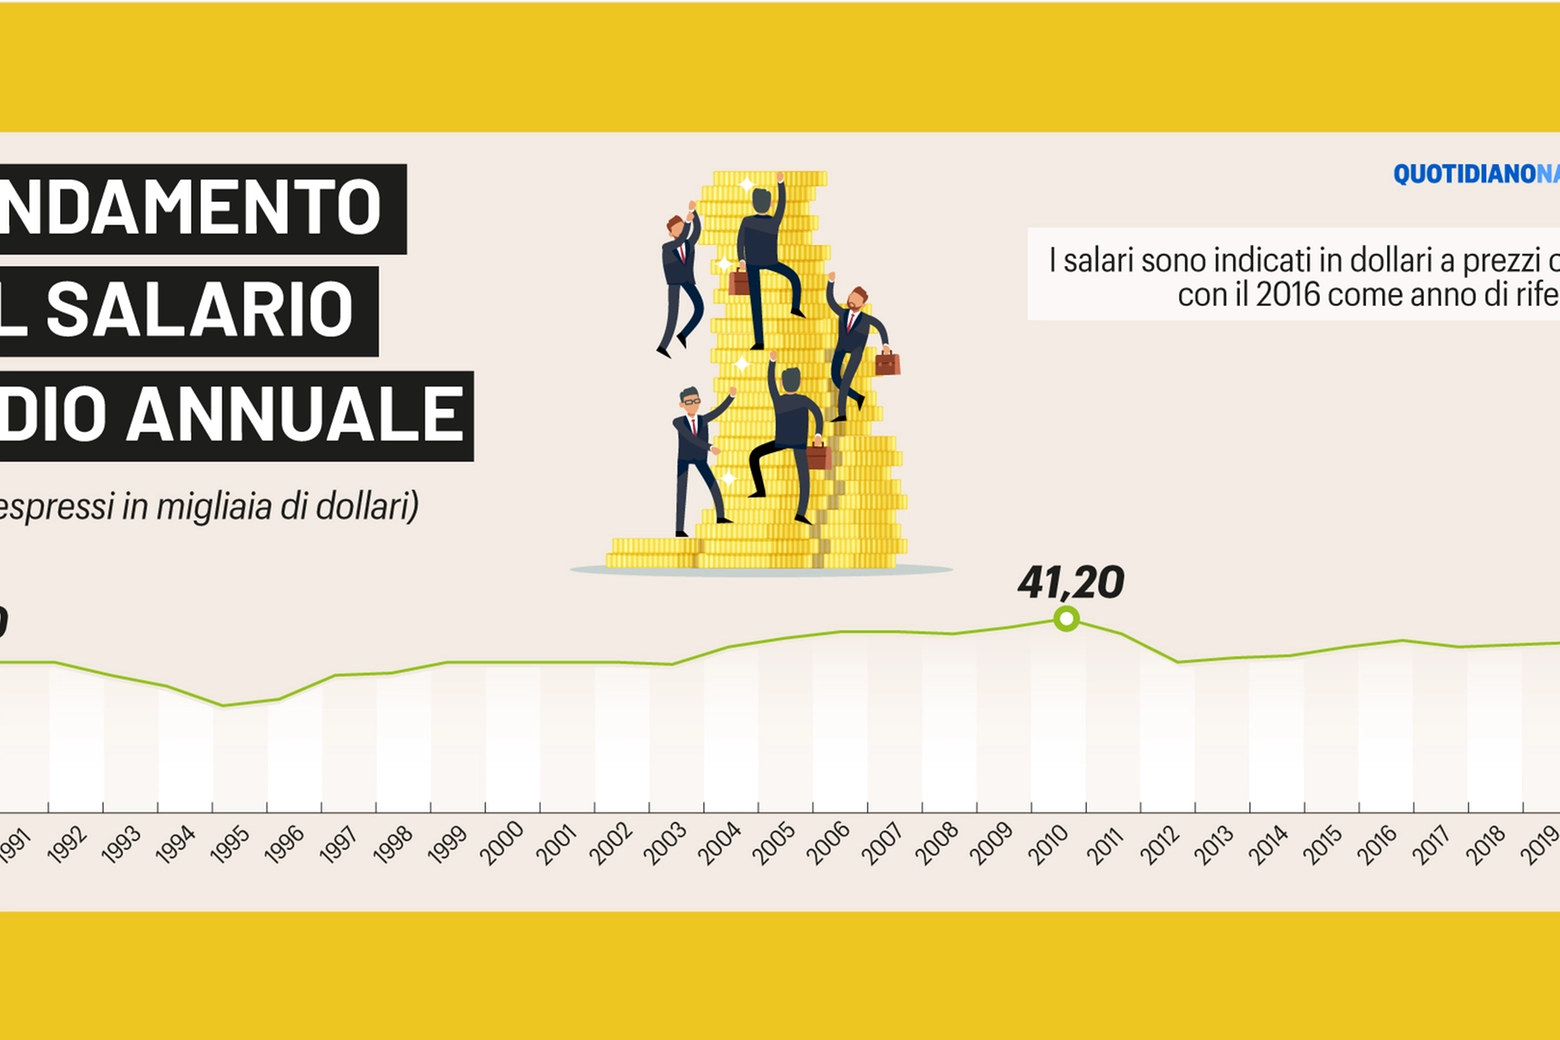 L'andamento del salario medio annuale in Italia, 1990-2020 (Openpolis su dati Ocse)